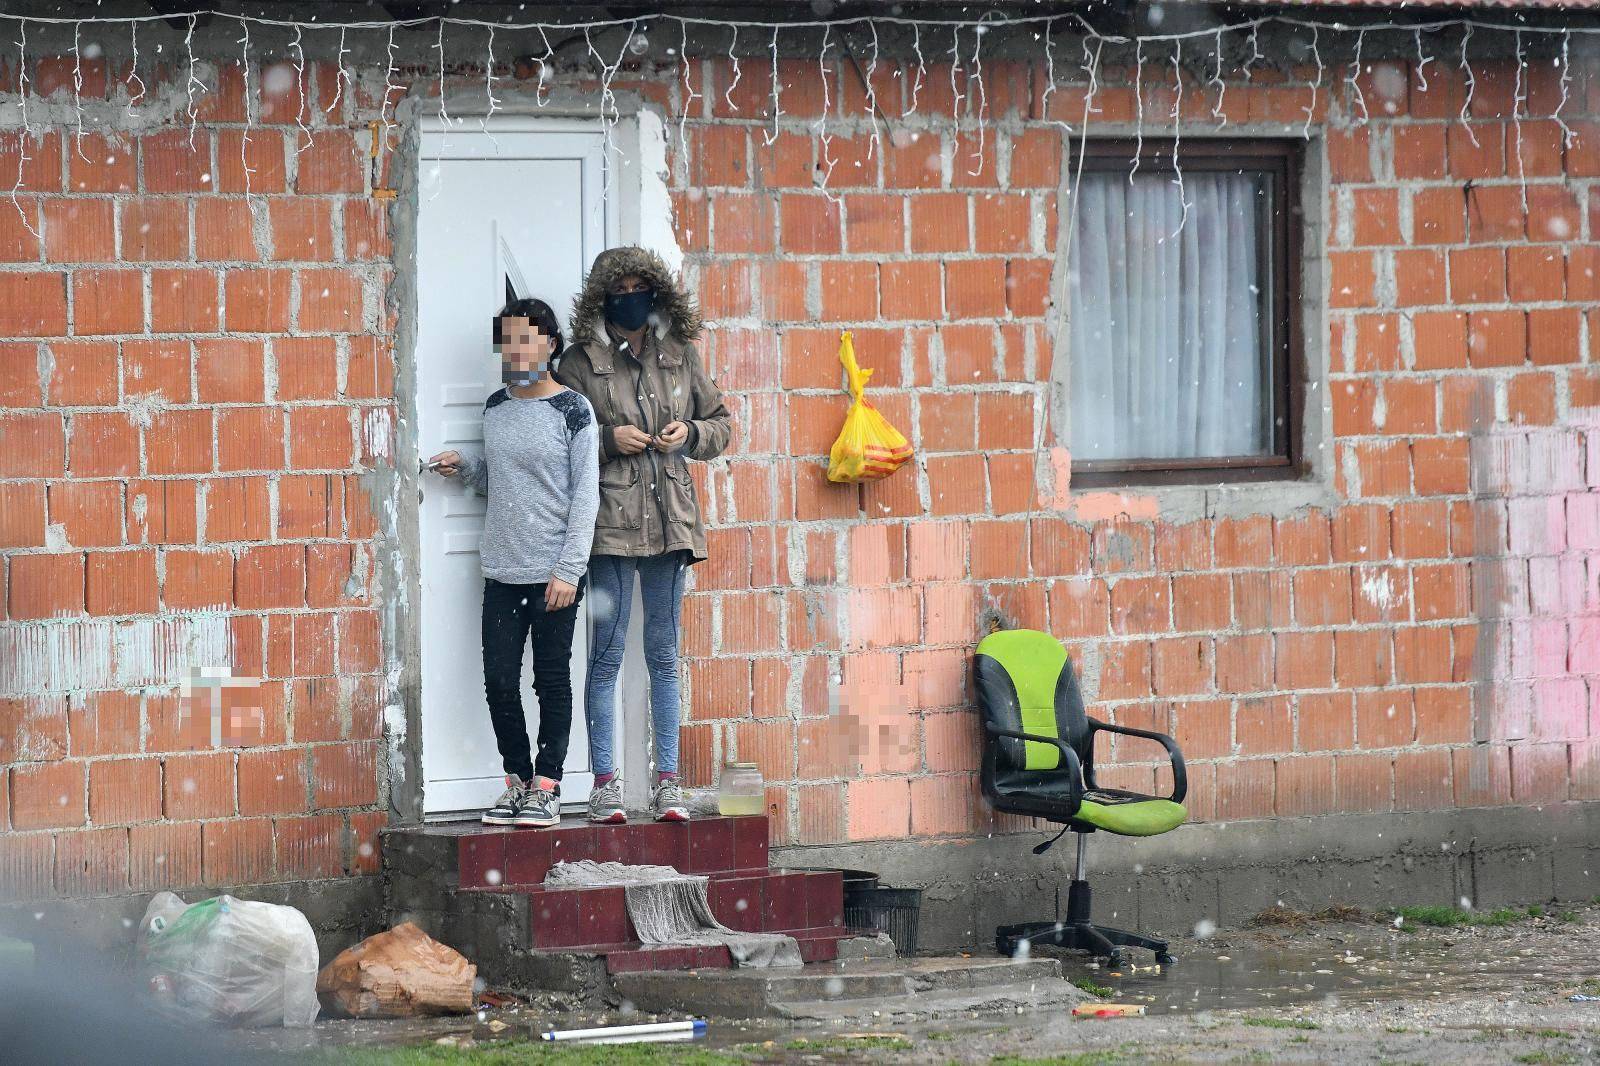 Poruka iz najvećeg romskog naselja u Hrvatskoj: "Bojimo se, mi ćemo se sigurno svi cijepiti"